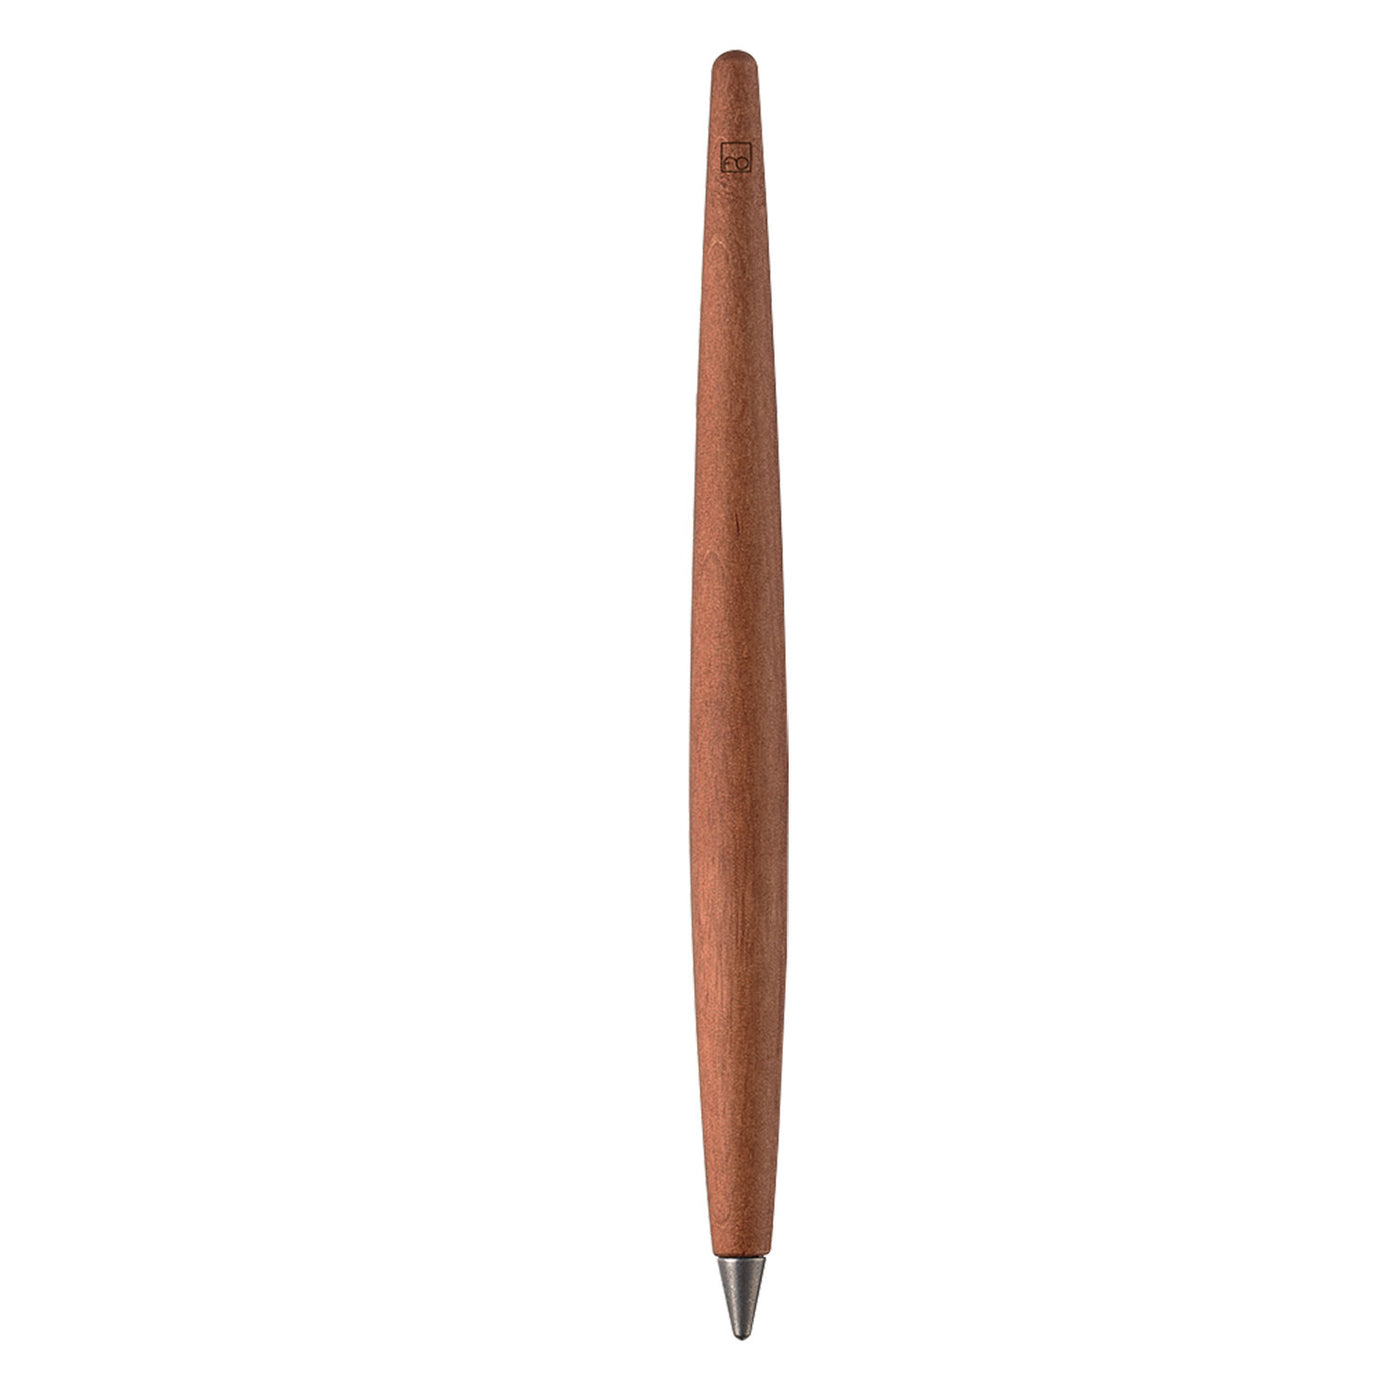 Pininfarina Segno Forever Piuma Leonardo 500th Limited Ethergraf Pencil - Evaporated Pear Wood